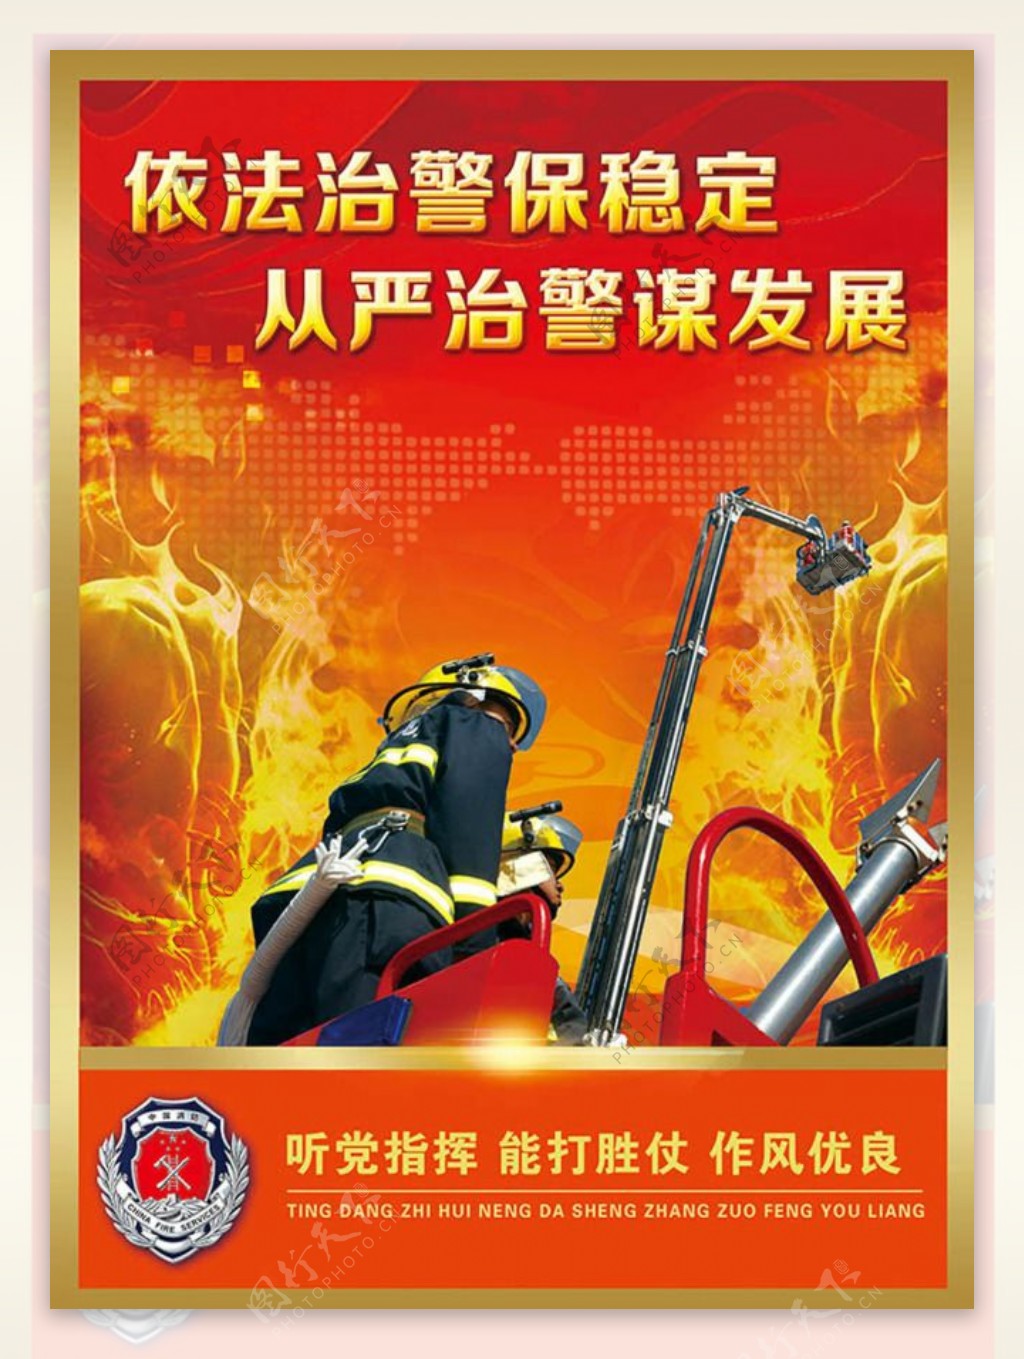 消防大队消防宣传标语展板图片psd素材